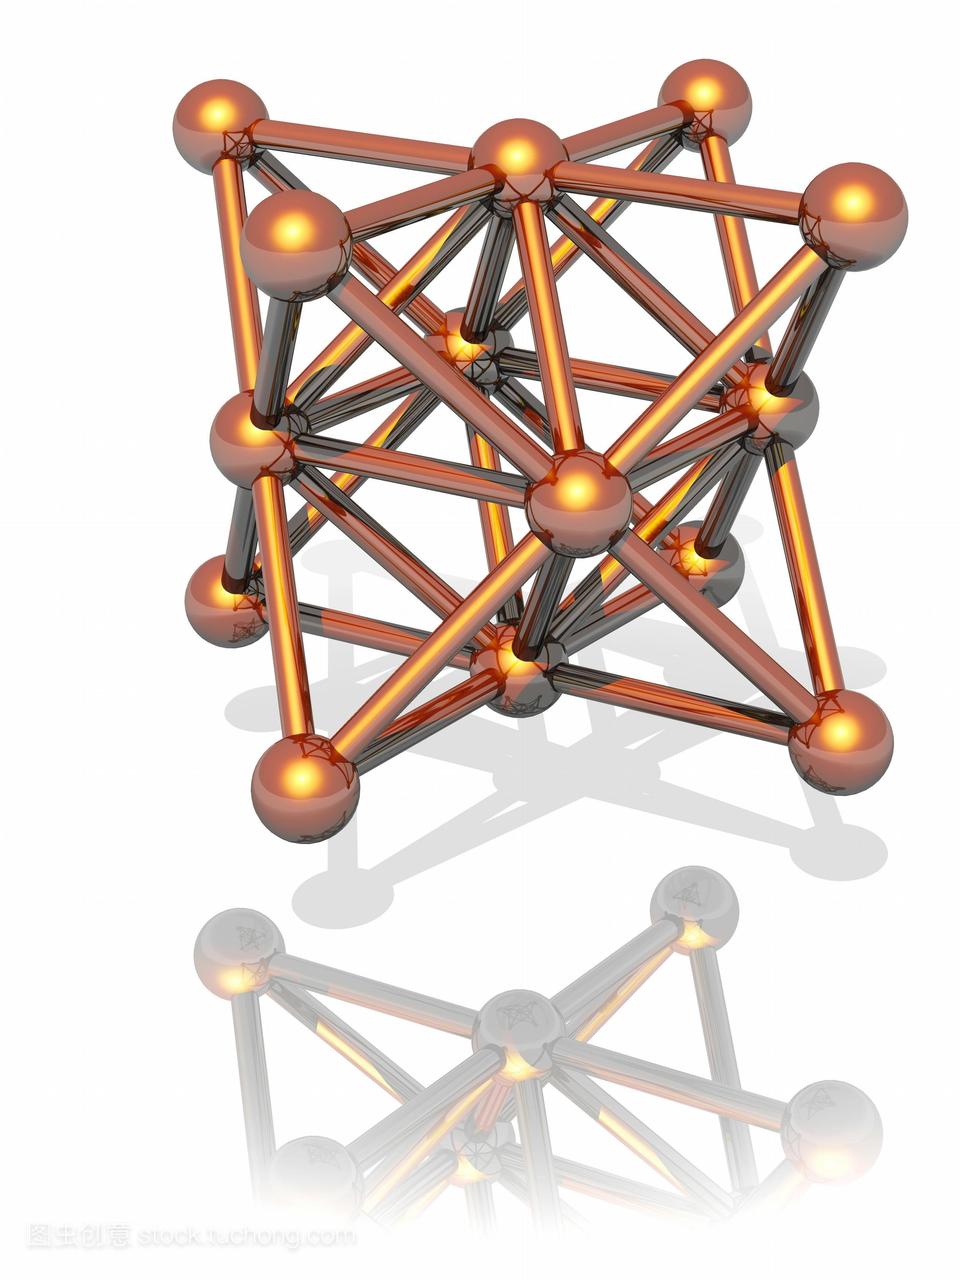 铜晶体计算机模型。这是一个面心立方结构